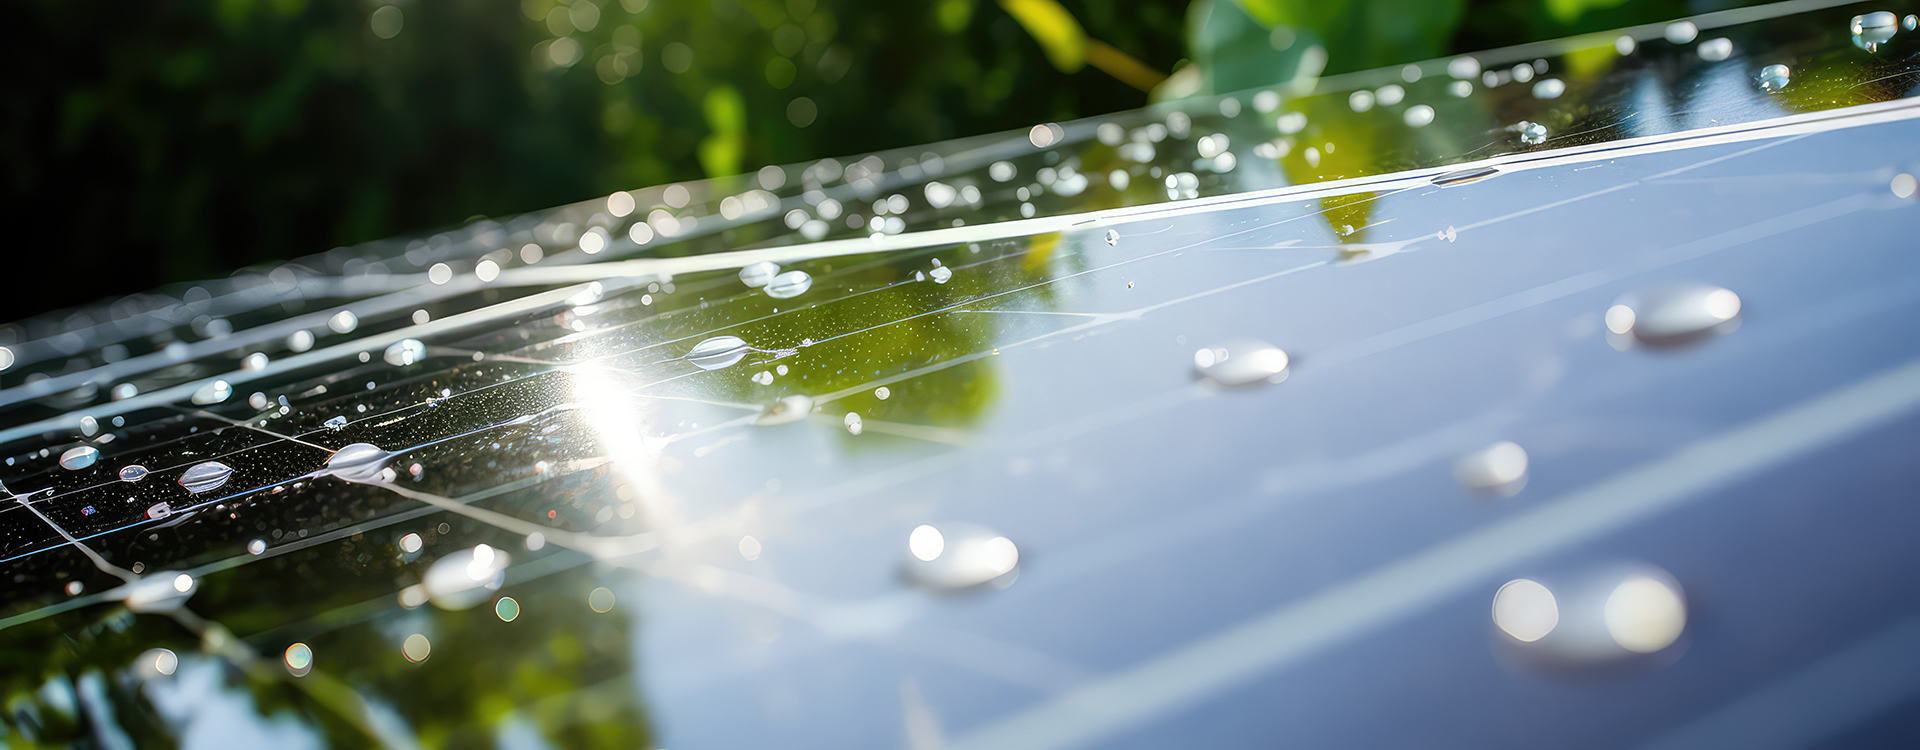 Solarpanel mit Wassertropfen